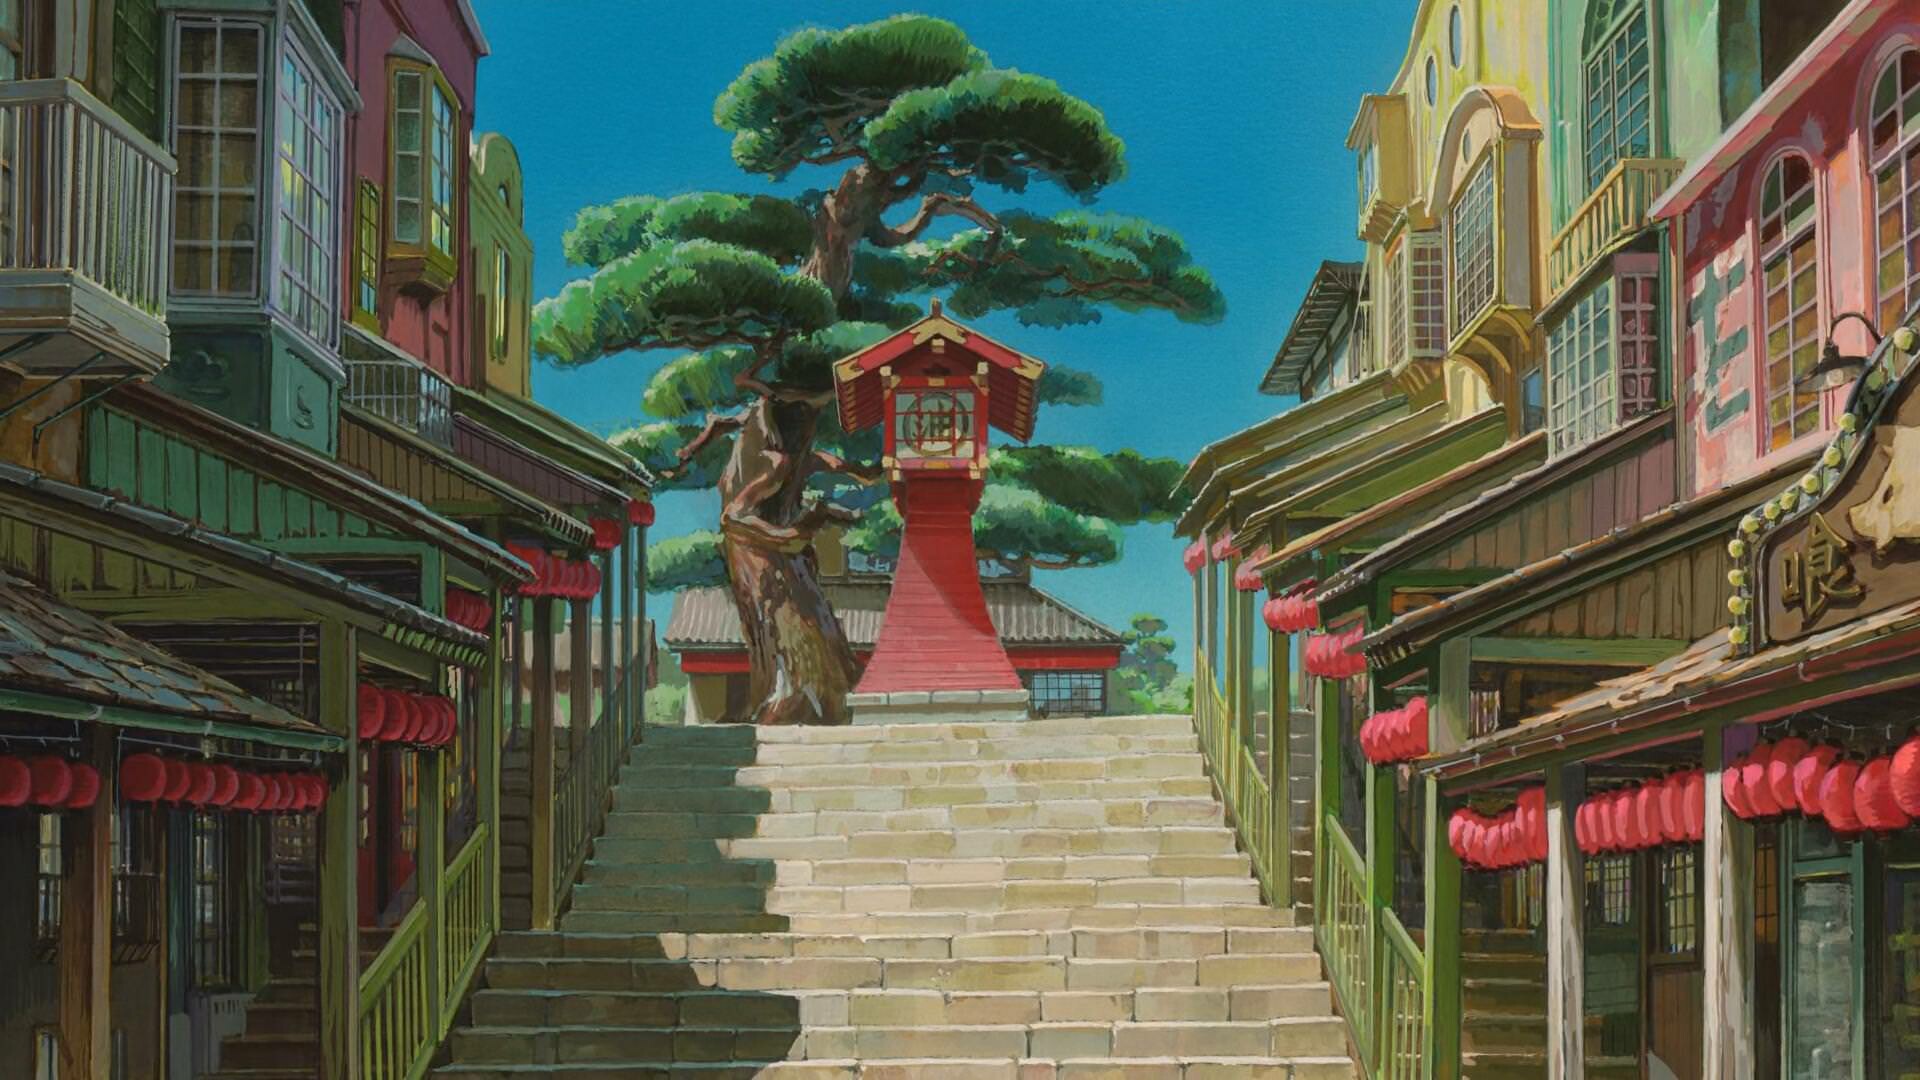 Spirited Away: The 2001 award-winning anime movie by the legendary Hayao Miyazaki. 1920x1080 Full HD Wallpaper.